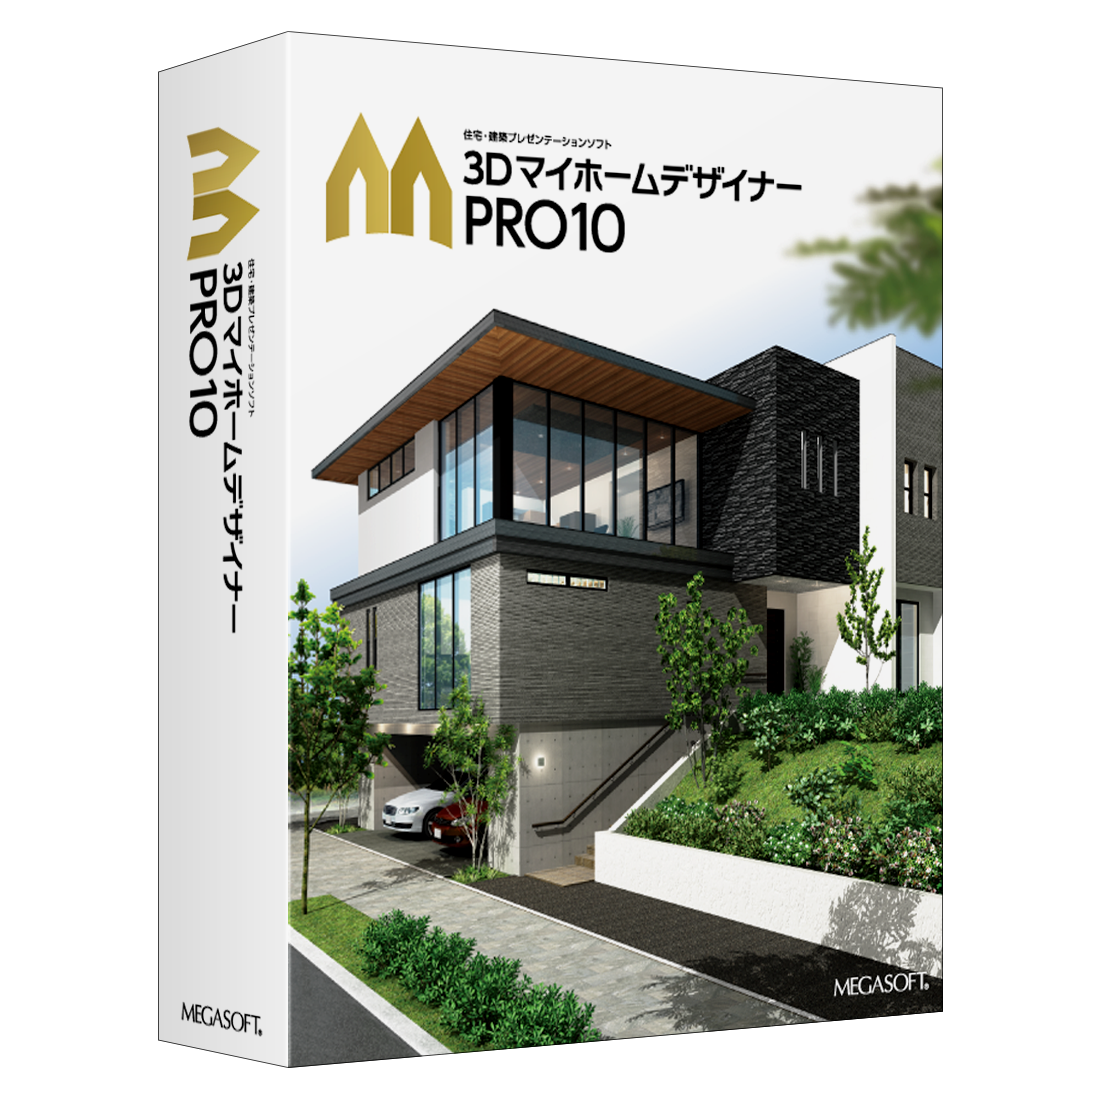 3DマイホームデザイナーPRO10 パッケージ版 – メガソフトショップ